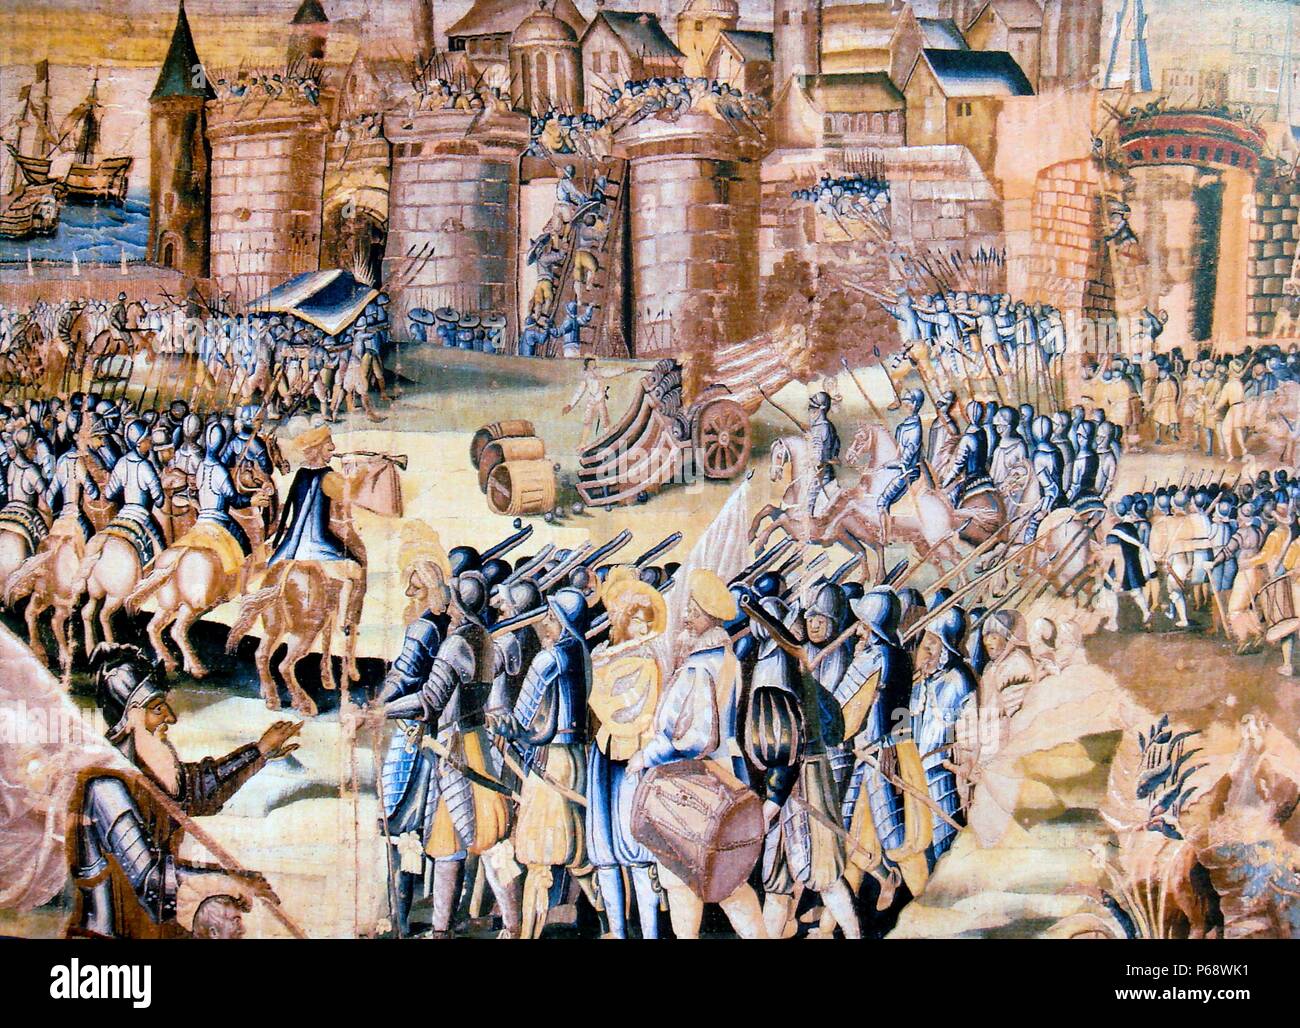 Tapisserie représentant le siège de La Rochelle de 1572-1573. assaut militaire sur la ville huguenote de La Rochelle par les troupes catholiques au cours de la quatrième phase de la Guerres de Religion, à la suite de l'août 1572 massacre de la Saint-Barthélemy Banque D'Images